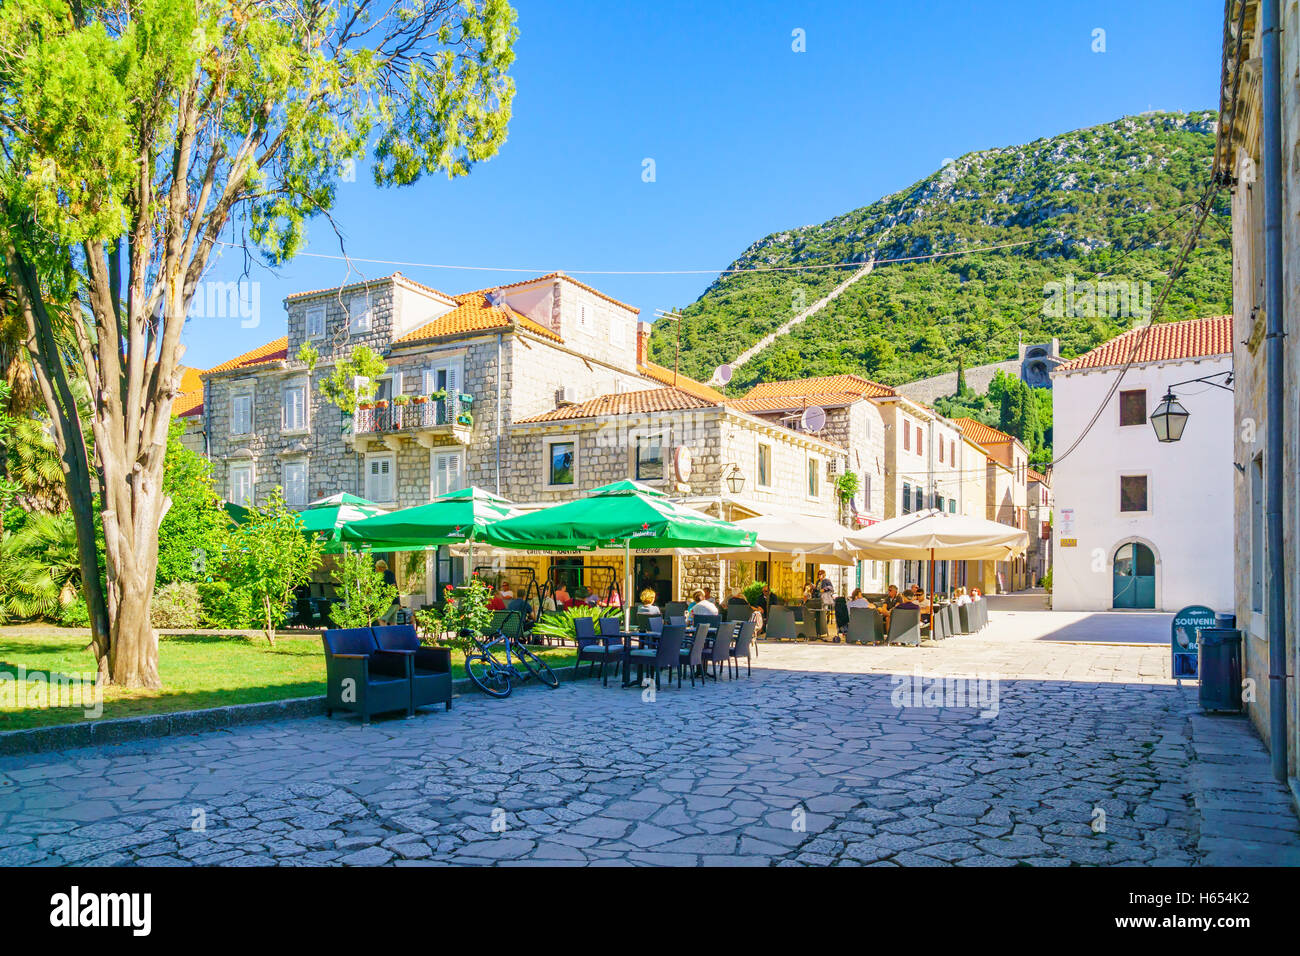 STON, Croazia - 25 giugno 2015: tipica scena di strada nel villaggio di Ston, con ristoranti, le vecchie mura, la gente del posto e i turisti Foto Stock